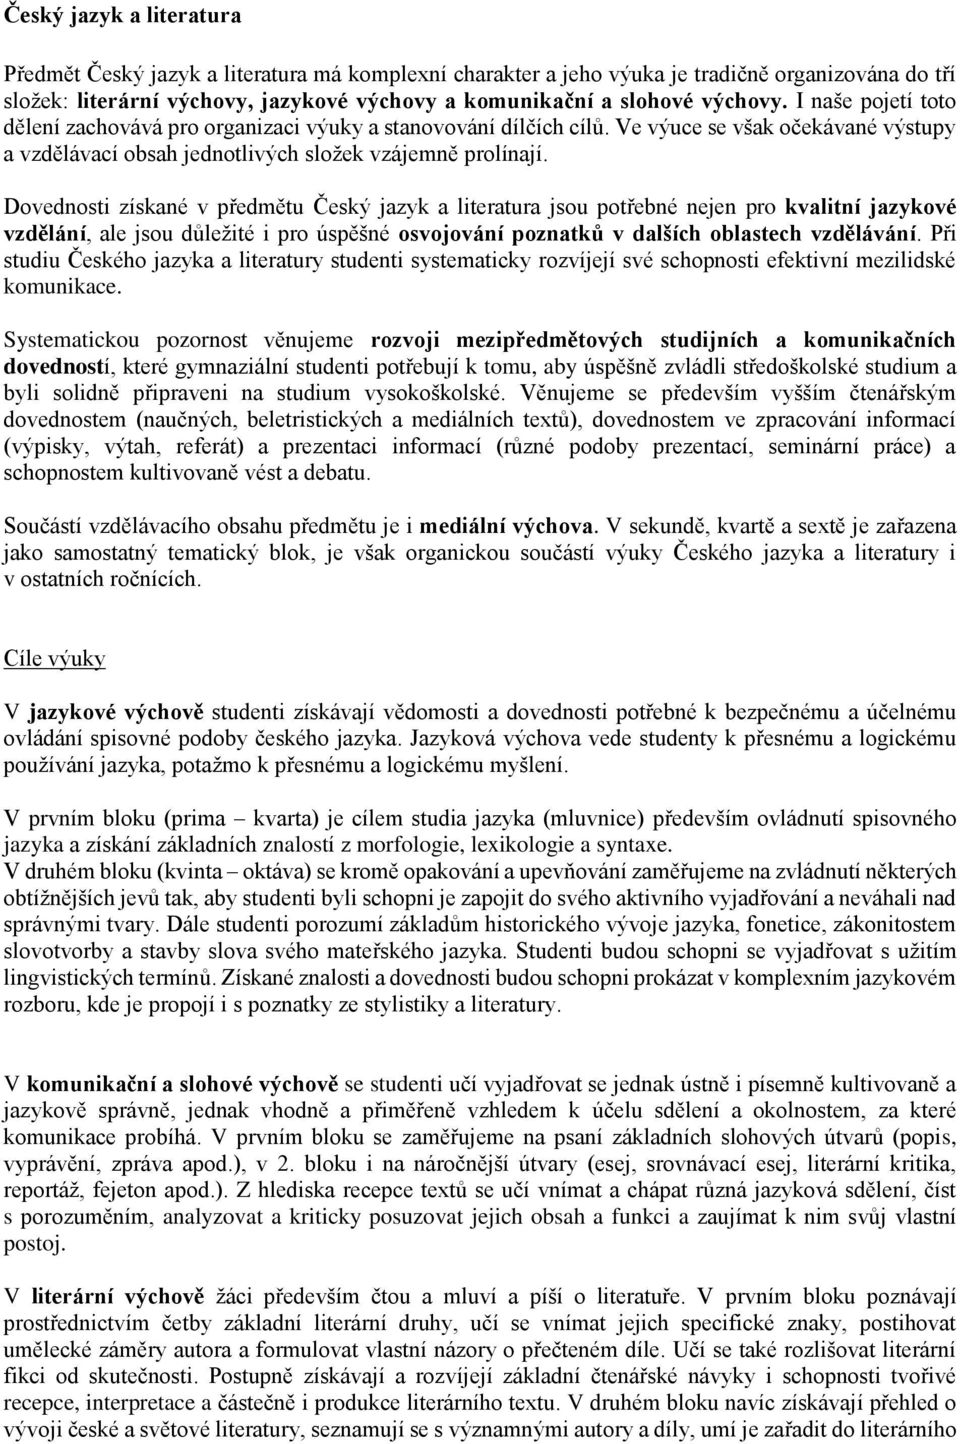 Český jazyk a literatura - PDF Stažení zdarma